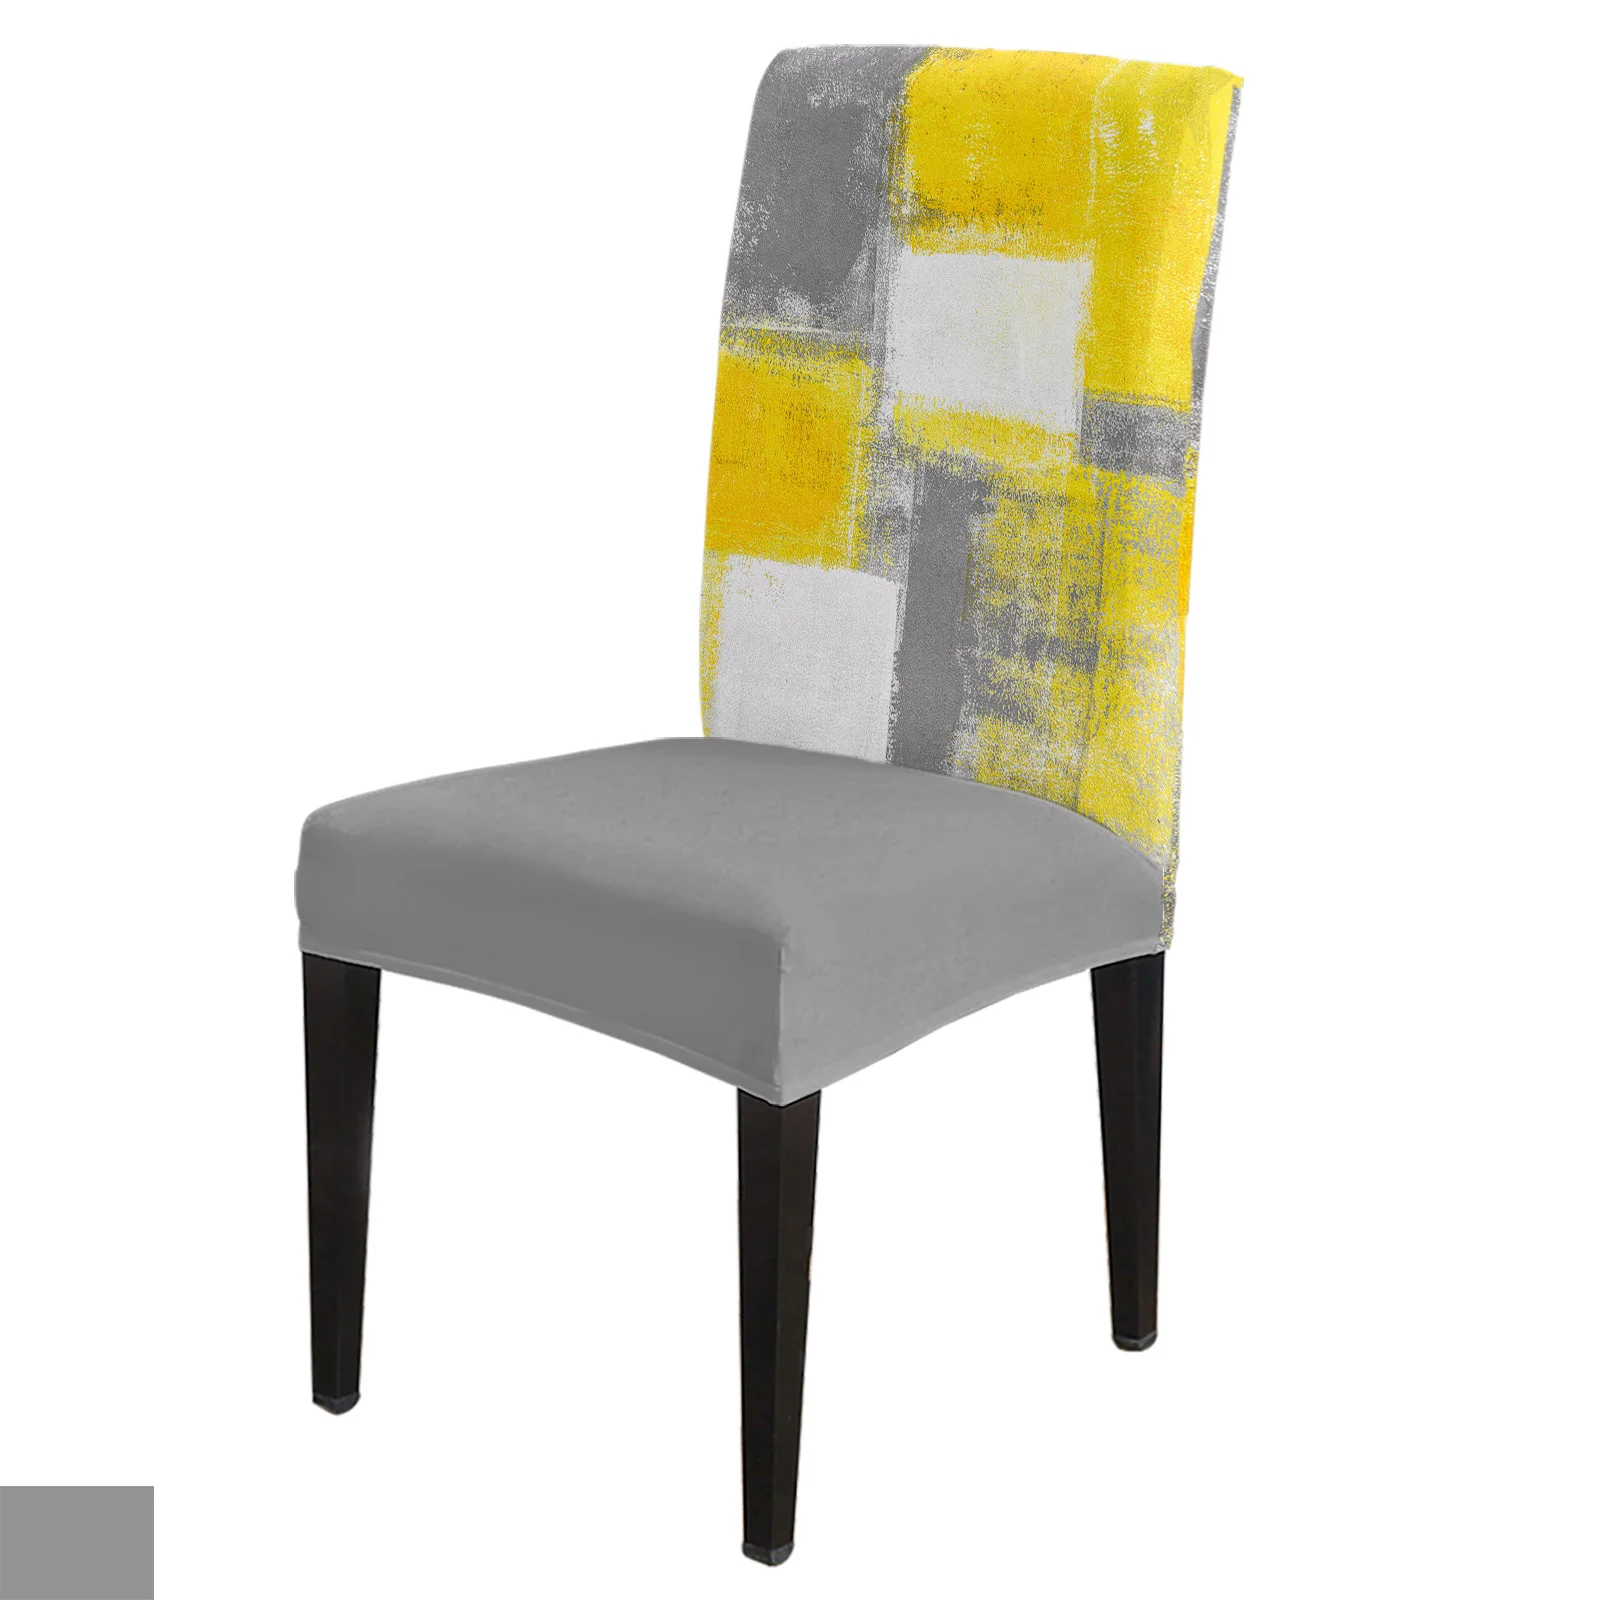 

Масляная живопись абстрактная Геометрическая желтая Обложка для стула стрейчевая эластичная обеденная комната чехол для кресла спандекс офисное кресло